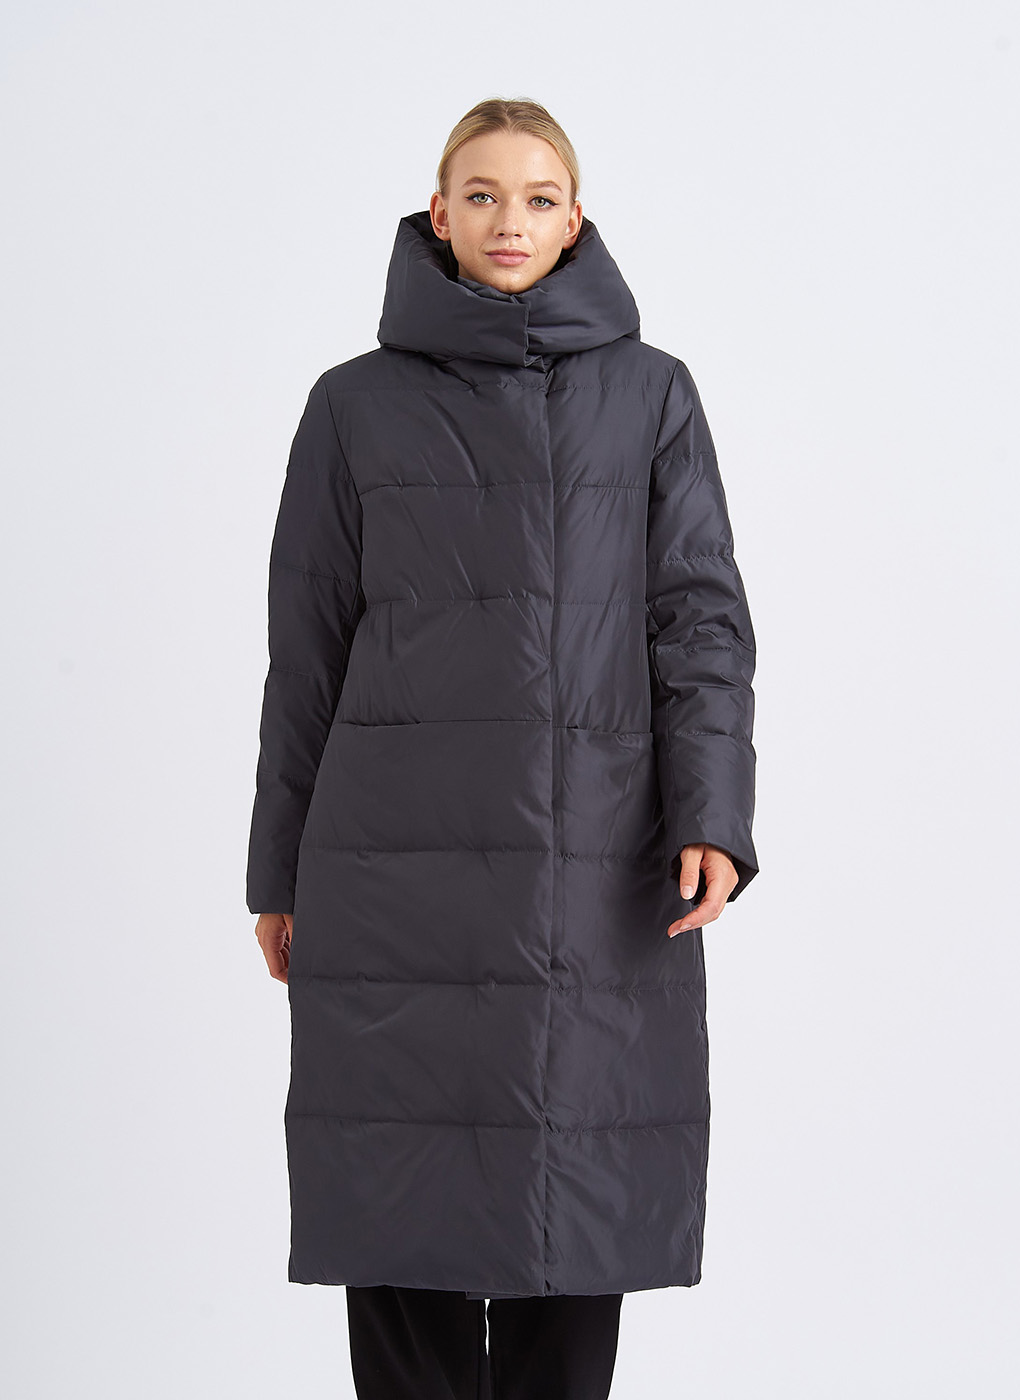 Пальто женское Napoli 65006 черное 48 RU